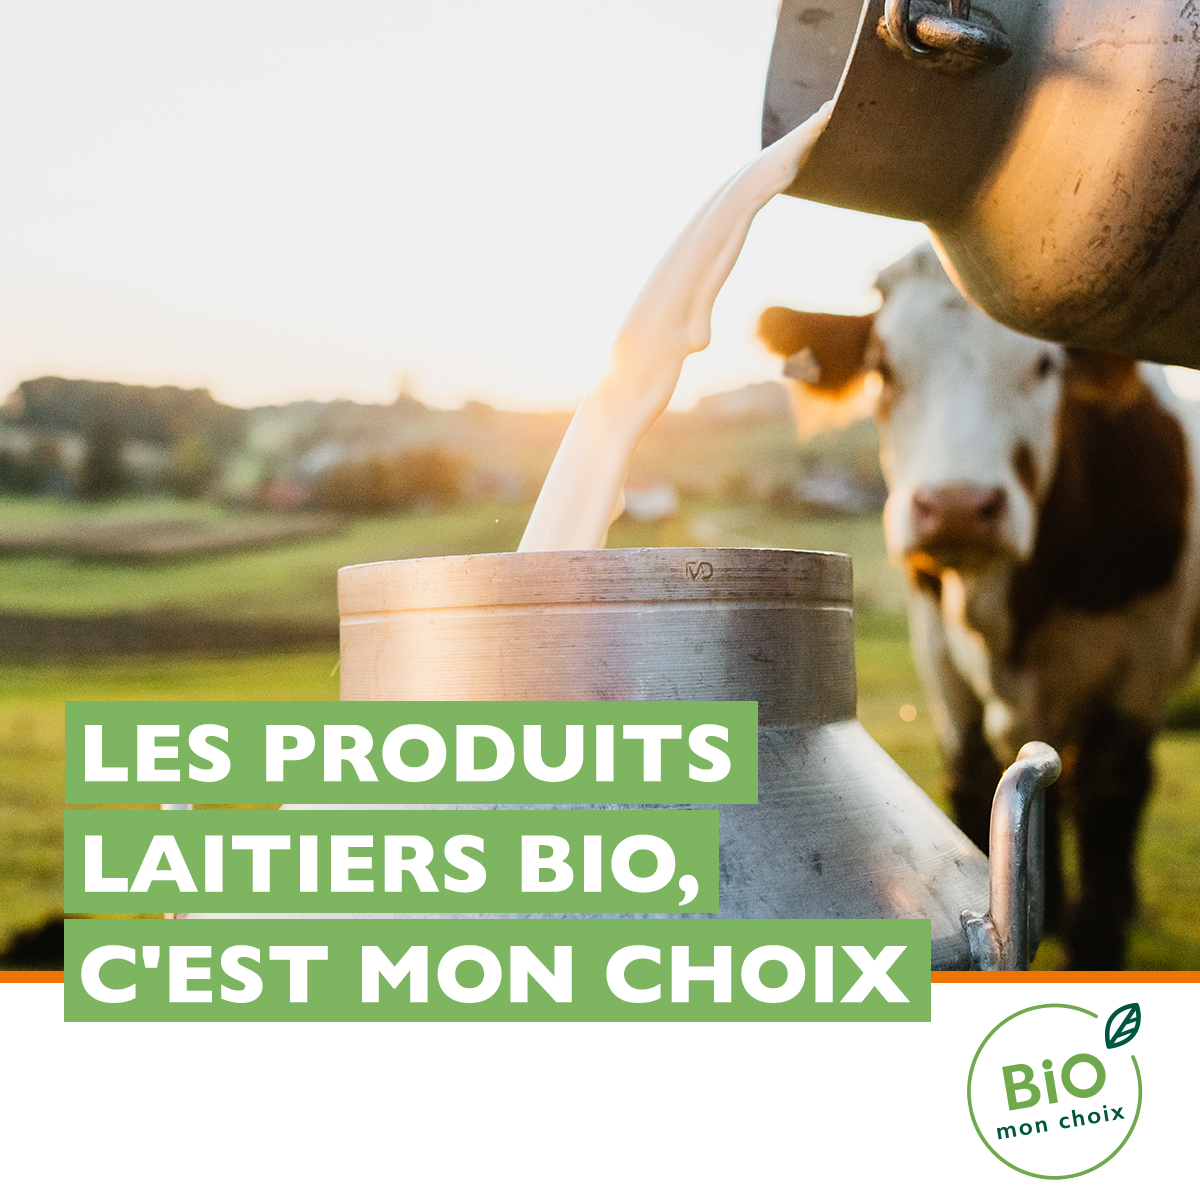 [Campagne de promotion] Appel aux opérateurs de la filière bovin lait certifiés bio